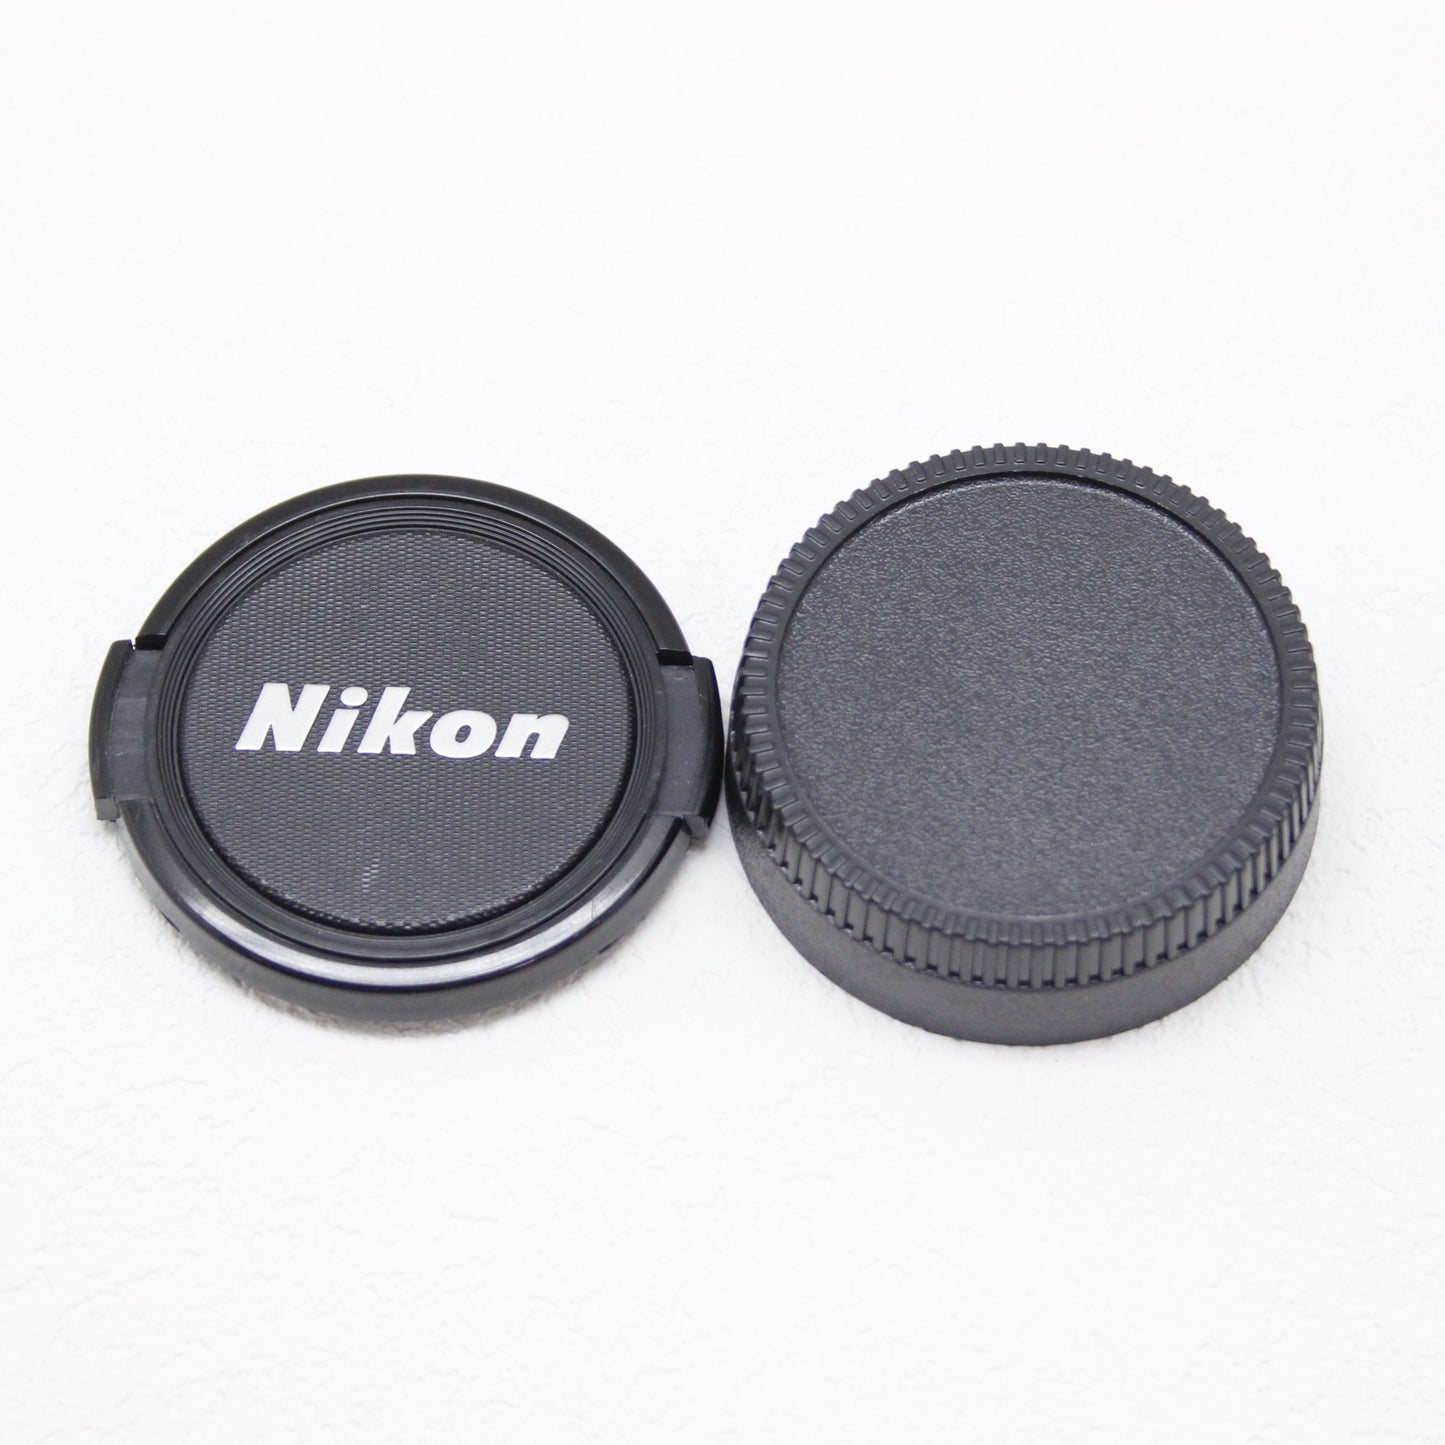 中古品 Nikon Ai-s NIKKOR 50mm F1.4【11月4日(土) youtube生配信でご紹介】